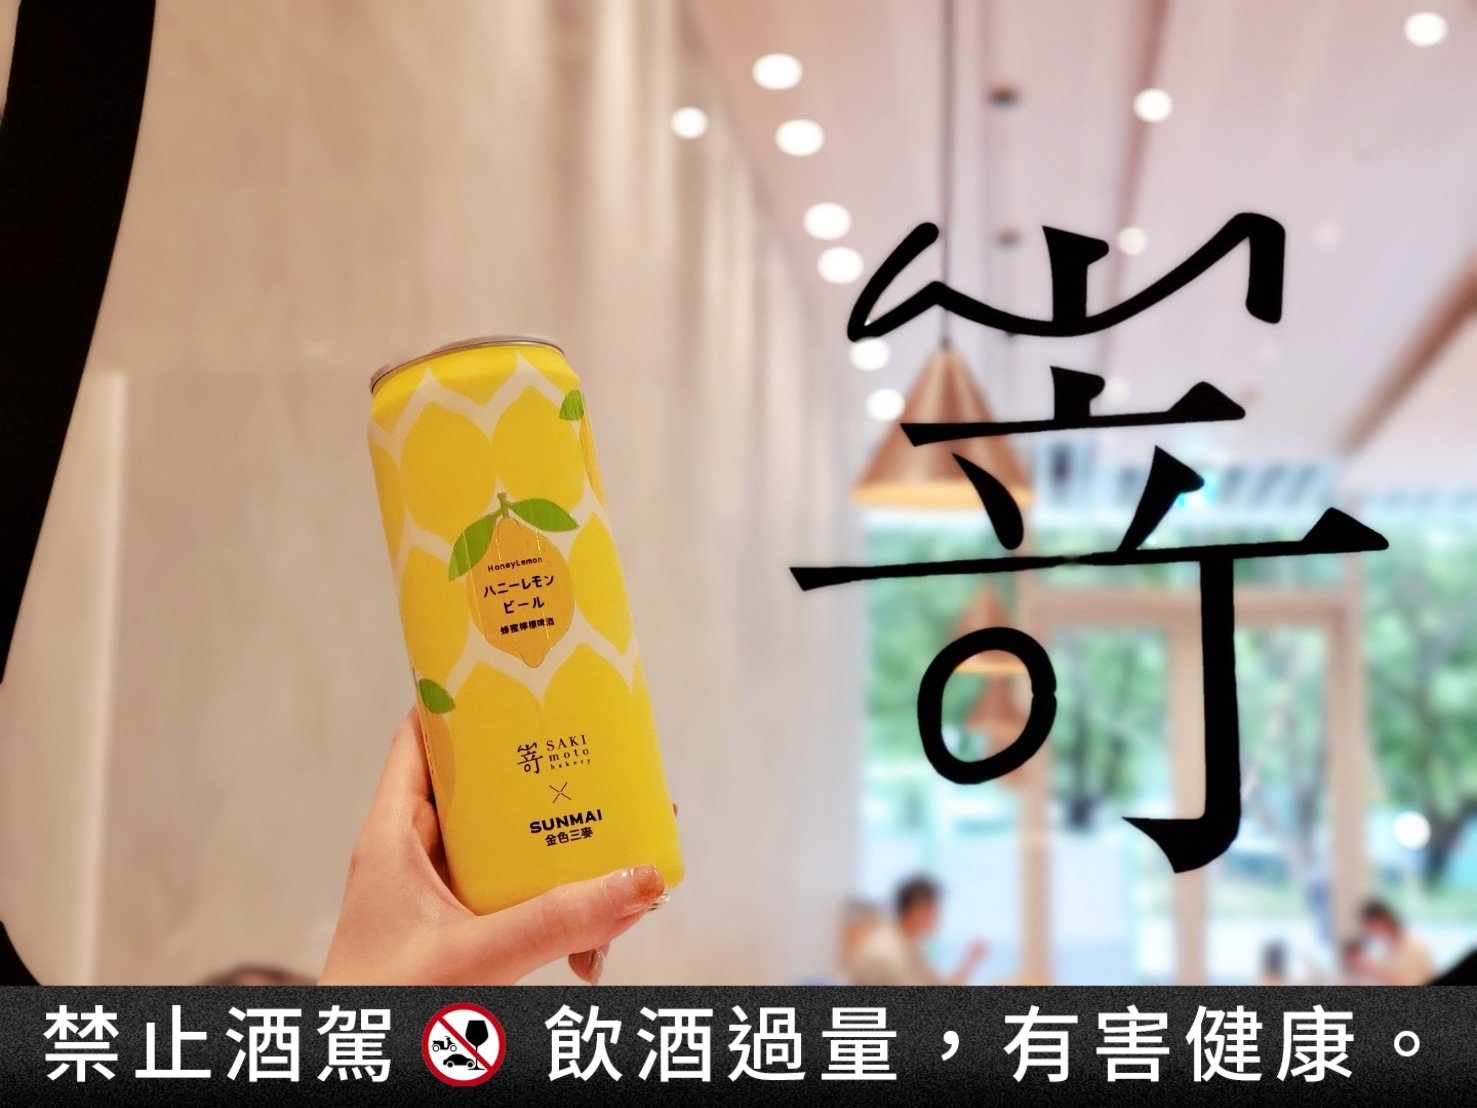 超商啤酒推薦 4. SUNMAI × SAKImoto Bakery 「蜂蜜檸檬啤酒」